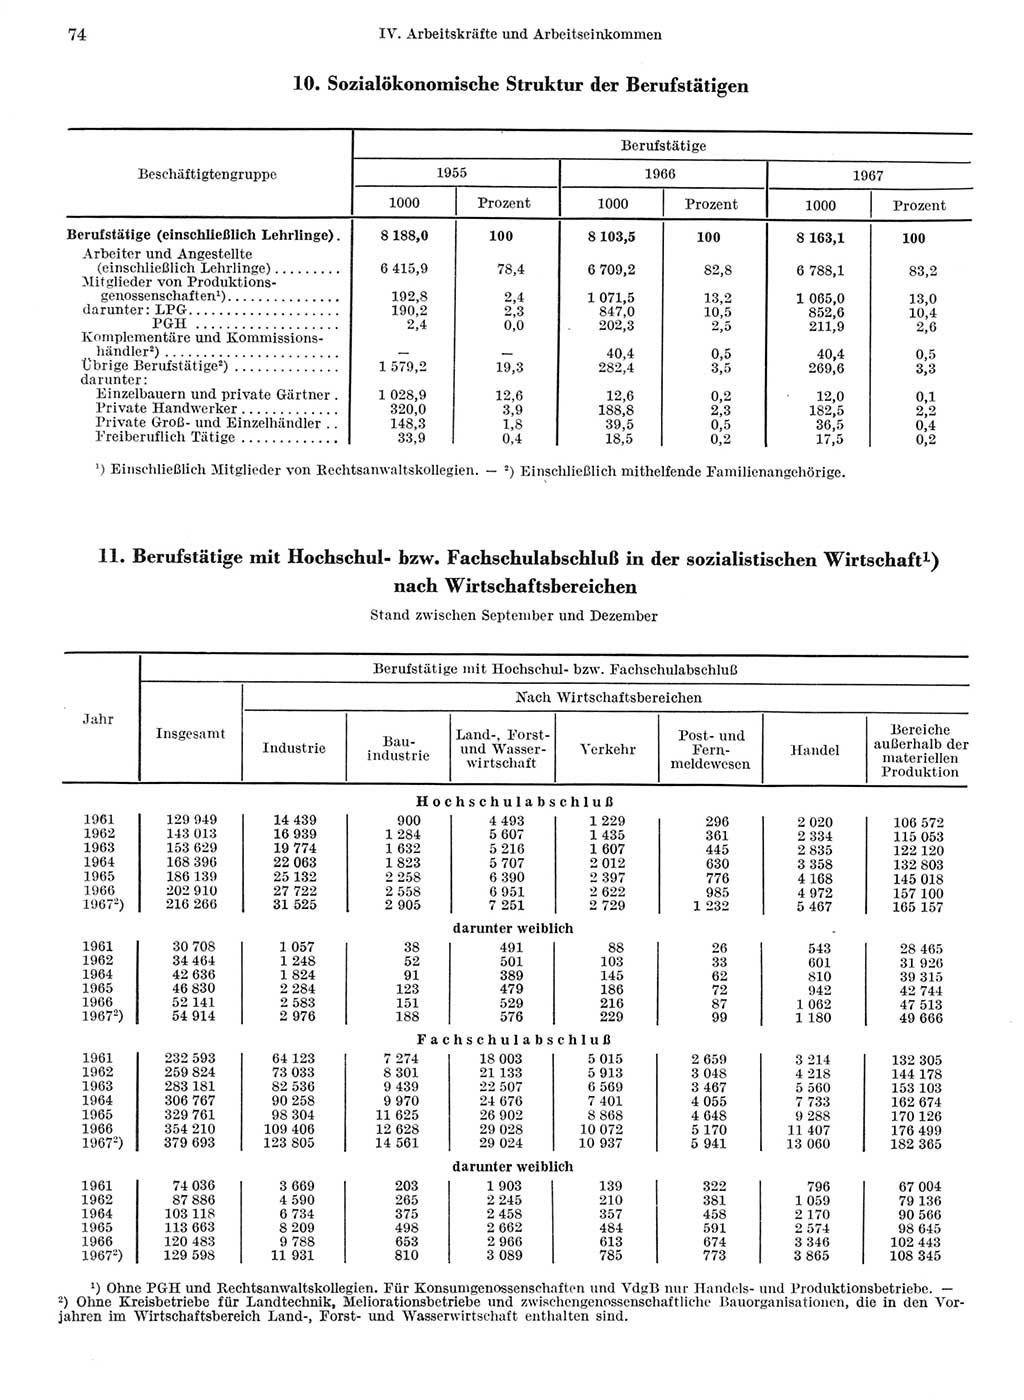 Statistisches Jahrbuch der Deutschen Demokratischen Republik (DDR) 1968, Seite 74 (Stat. Jb. DDR 1968, S. 74)